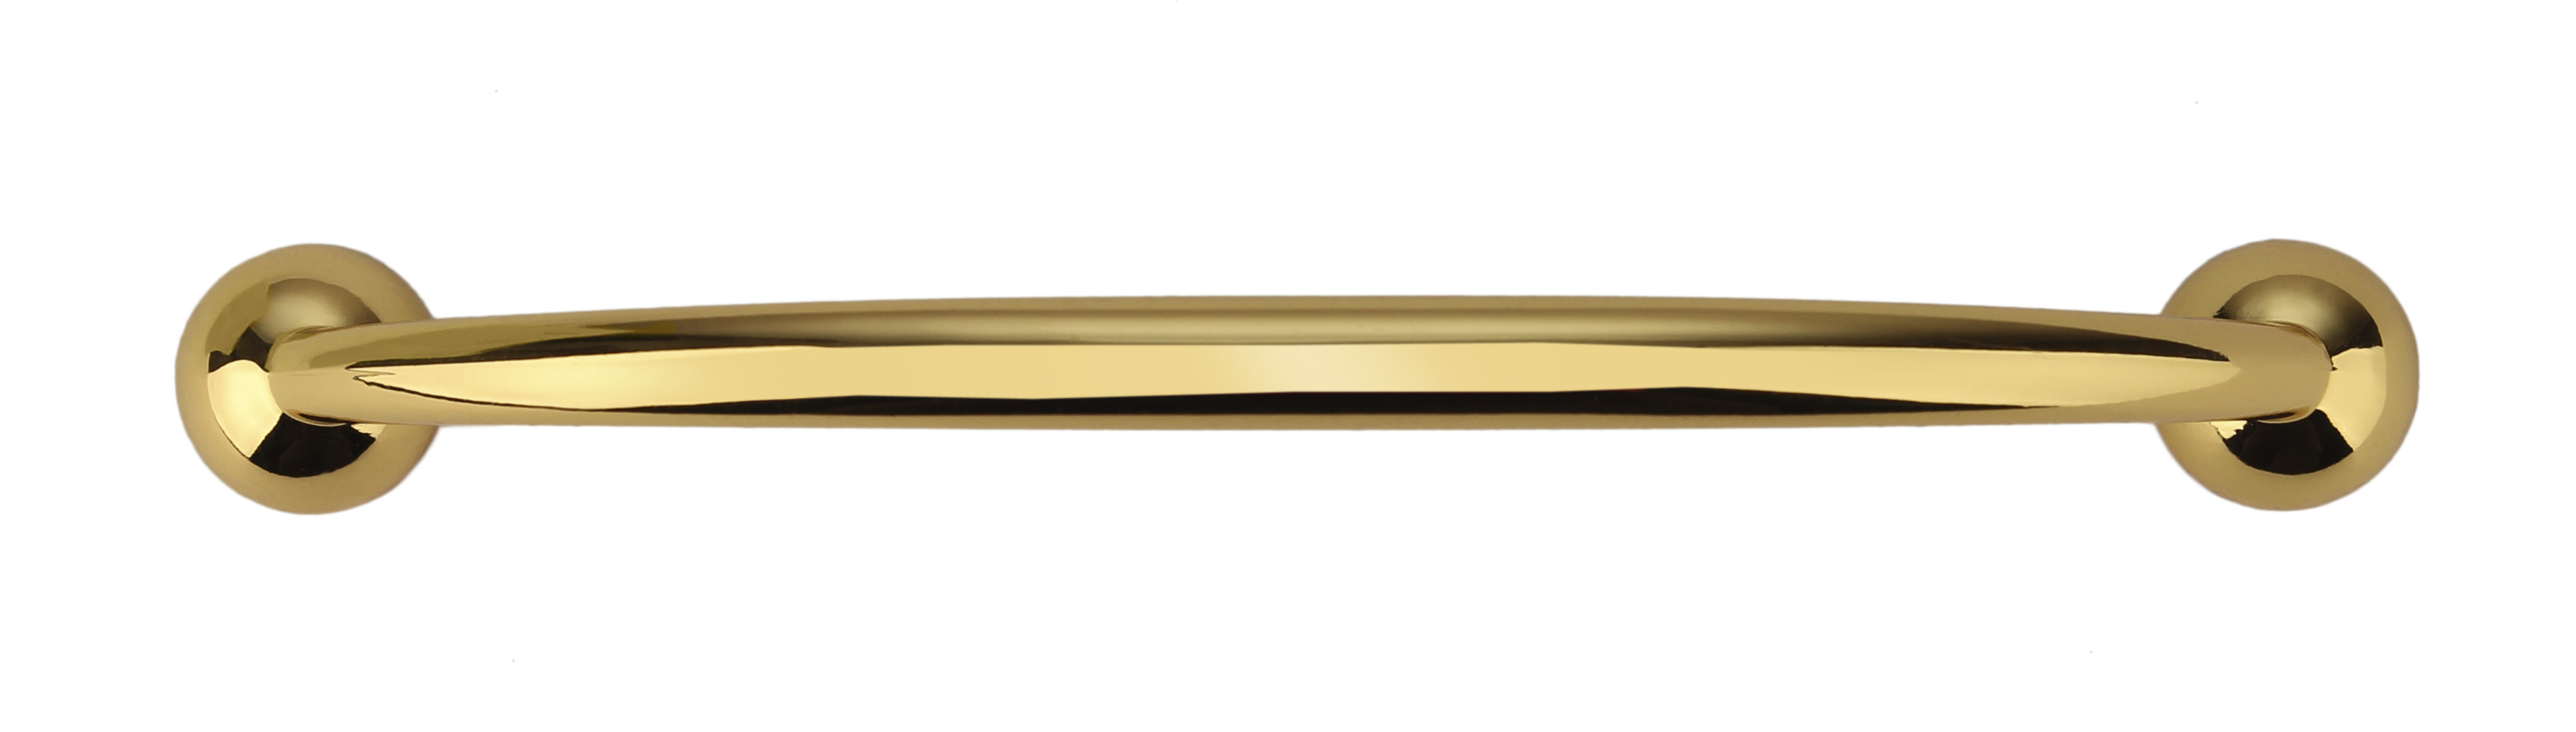 ручка мебельная прозрачная с золотом